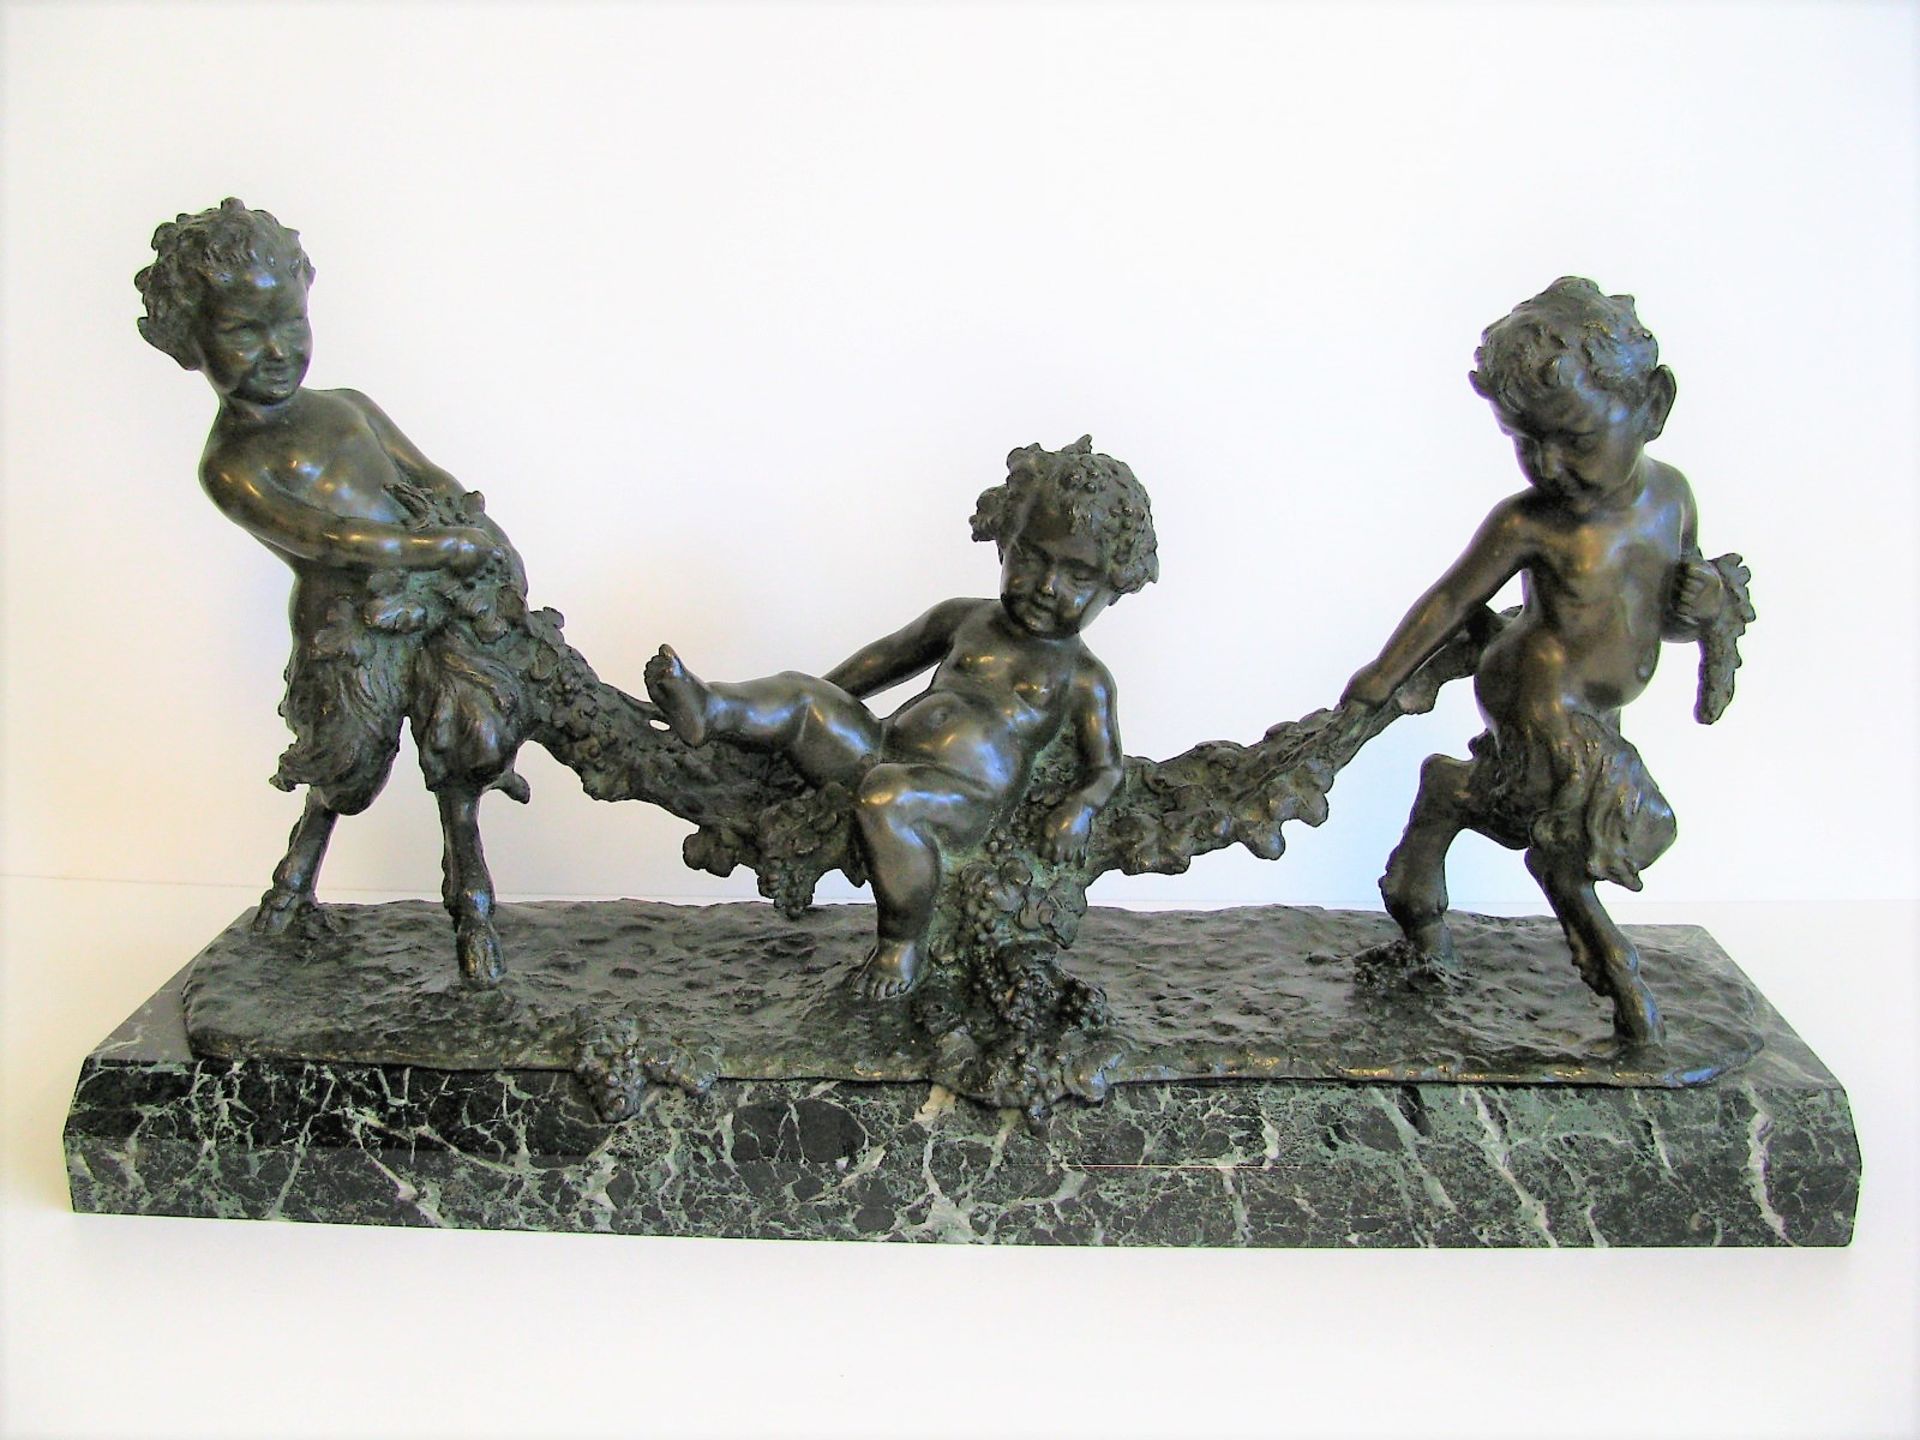 D'Aste, Joseph, 1881 - 1945, Neapel - Volendam, Italienisch-französischer Bildhauer, tätig um 1900-